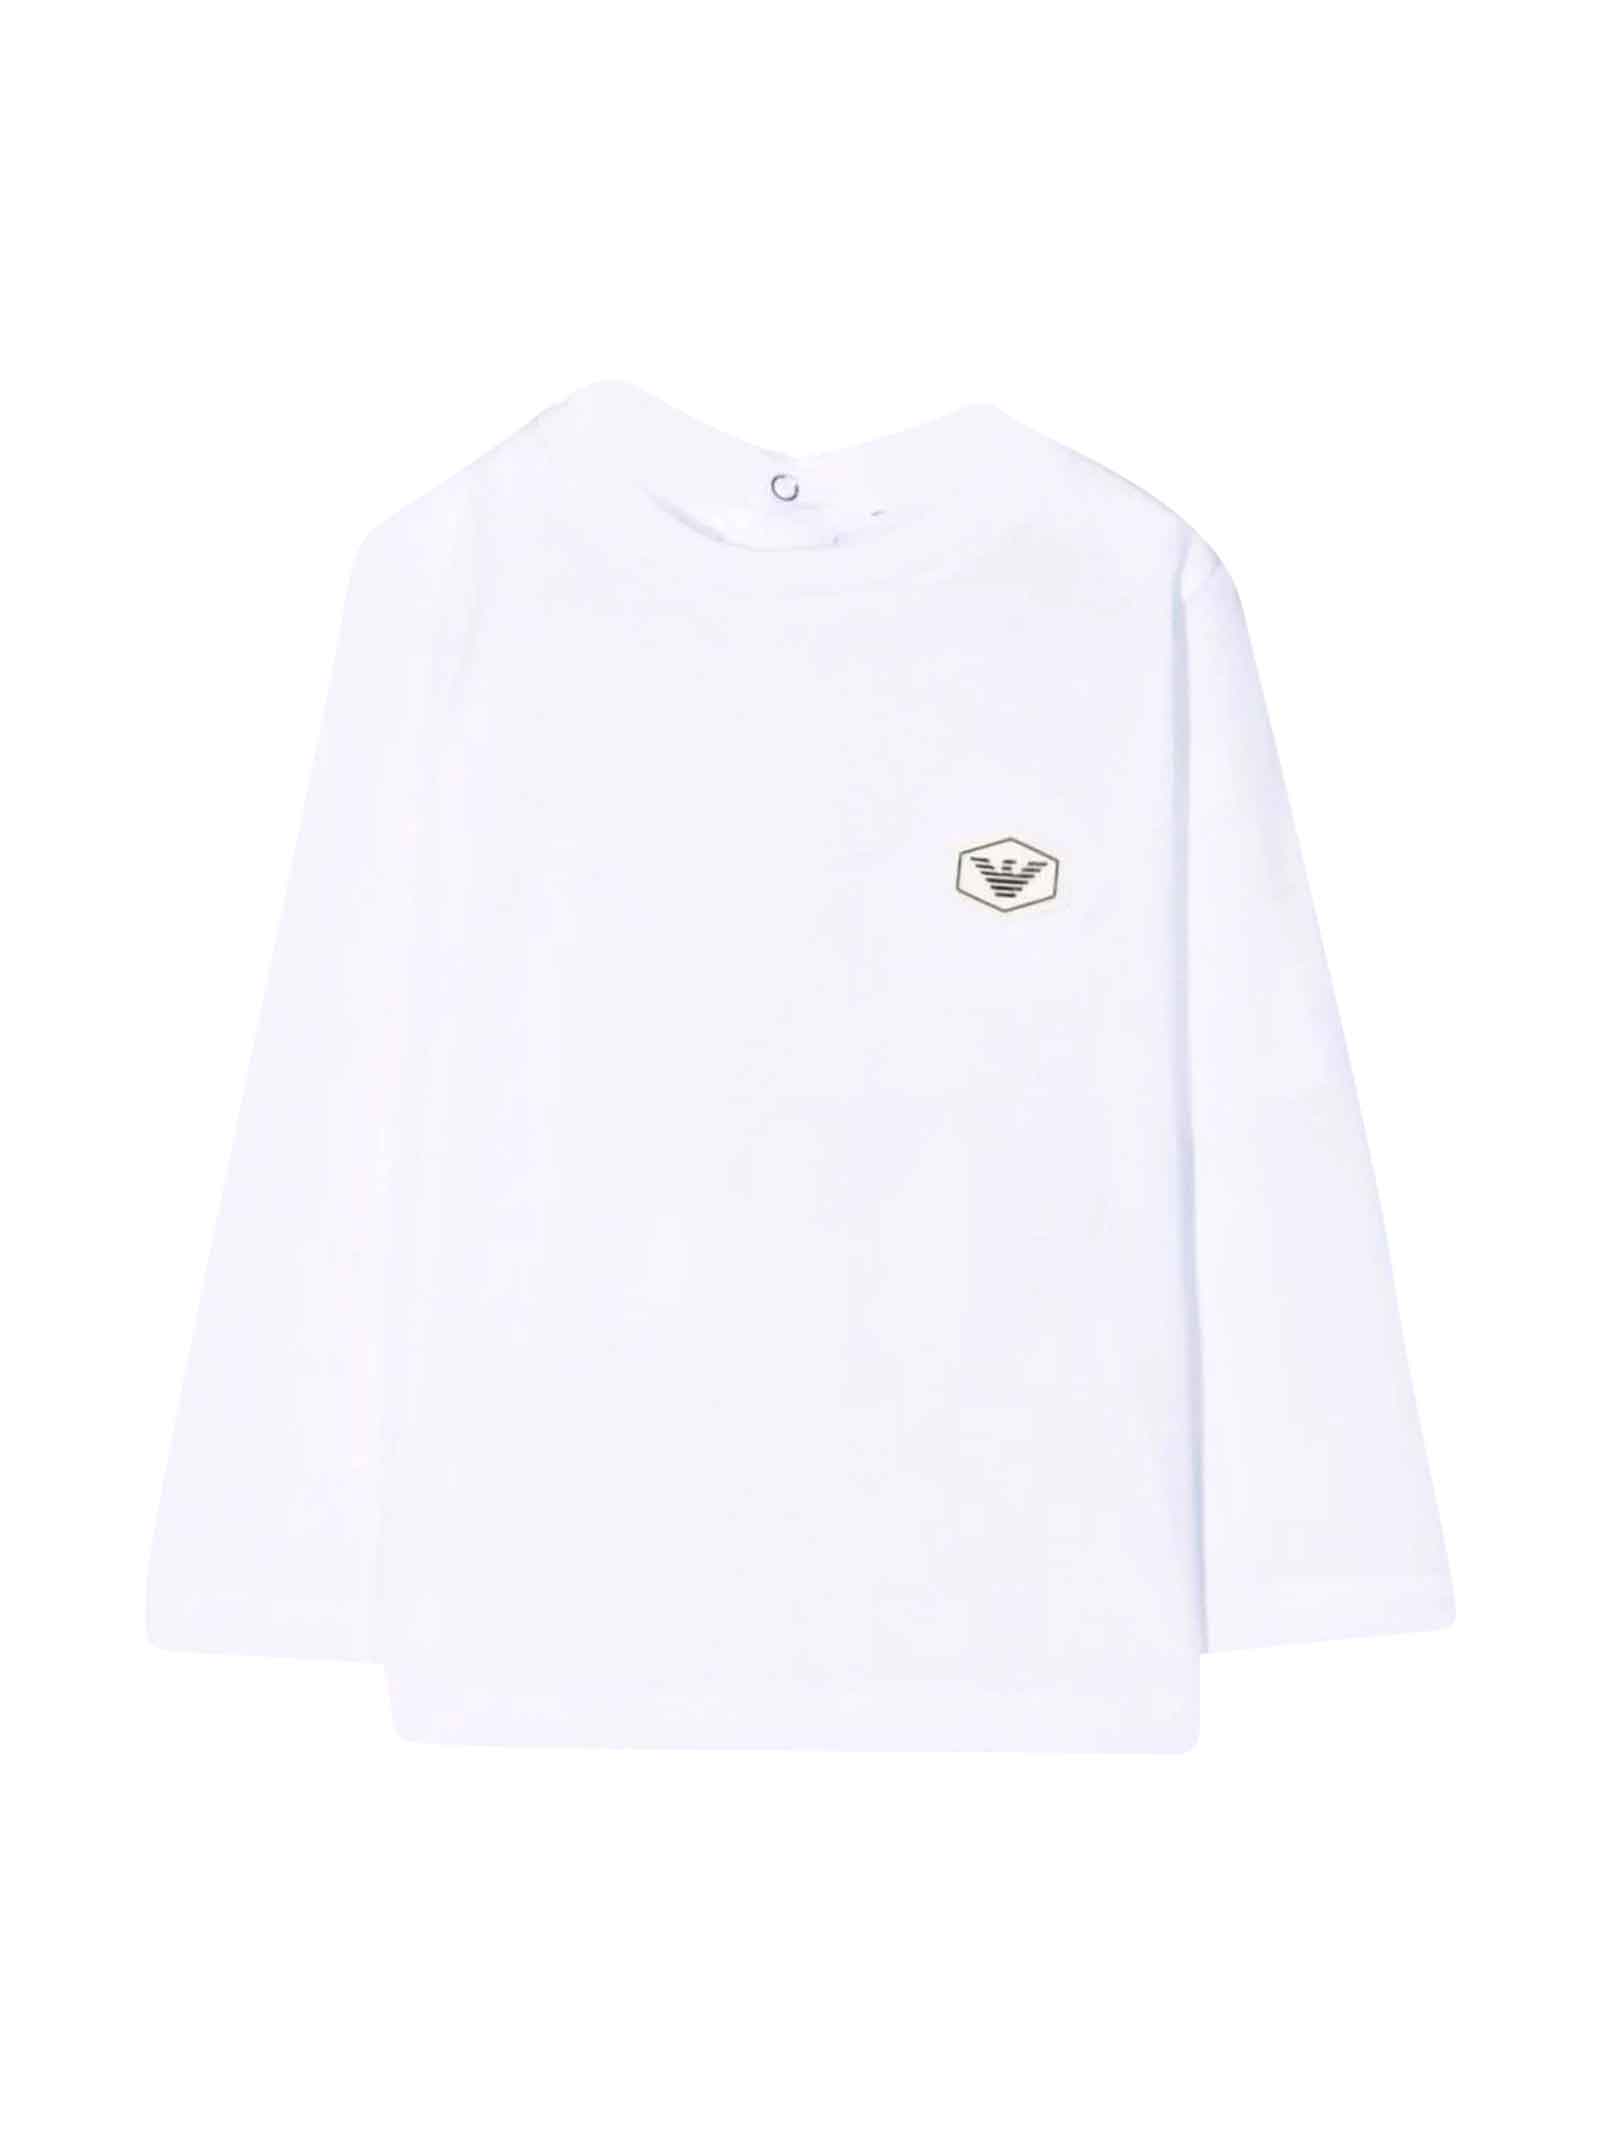 Emporio Armani White T-shirt With Black Logo